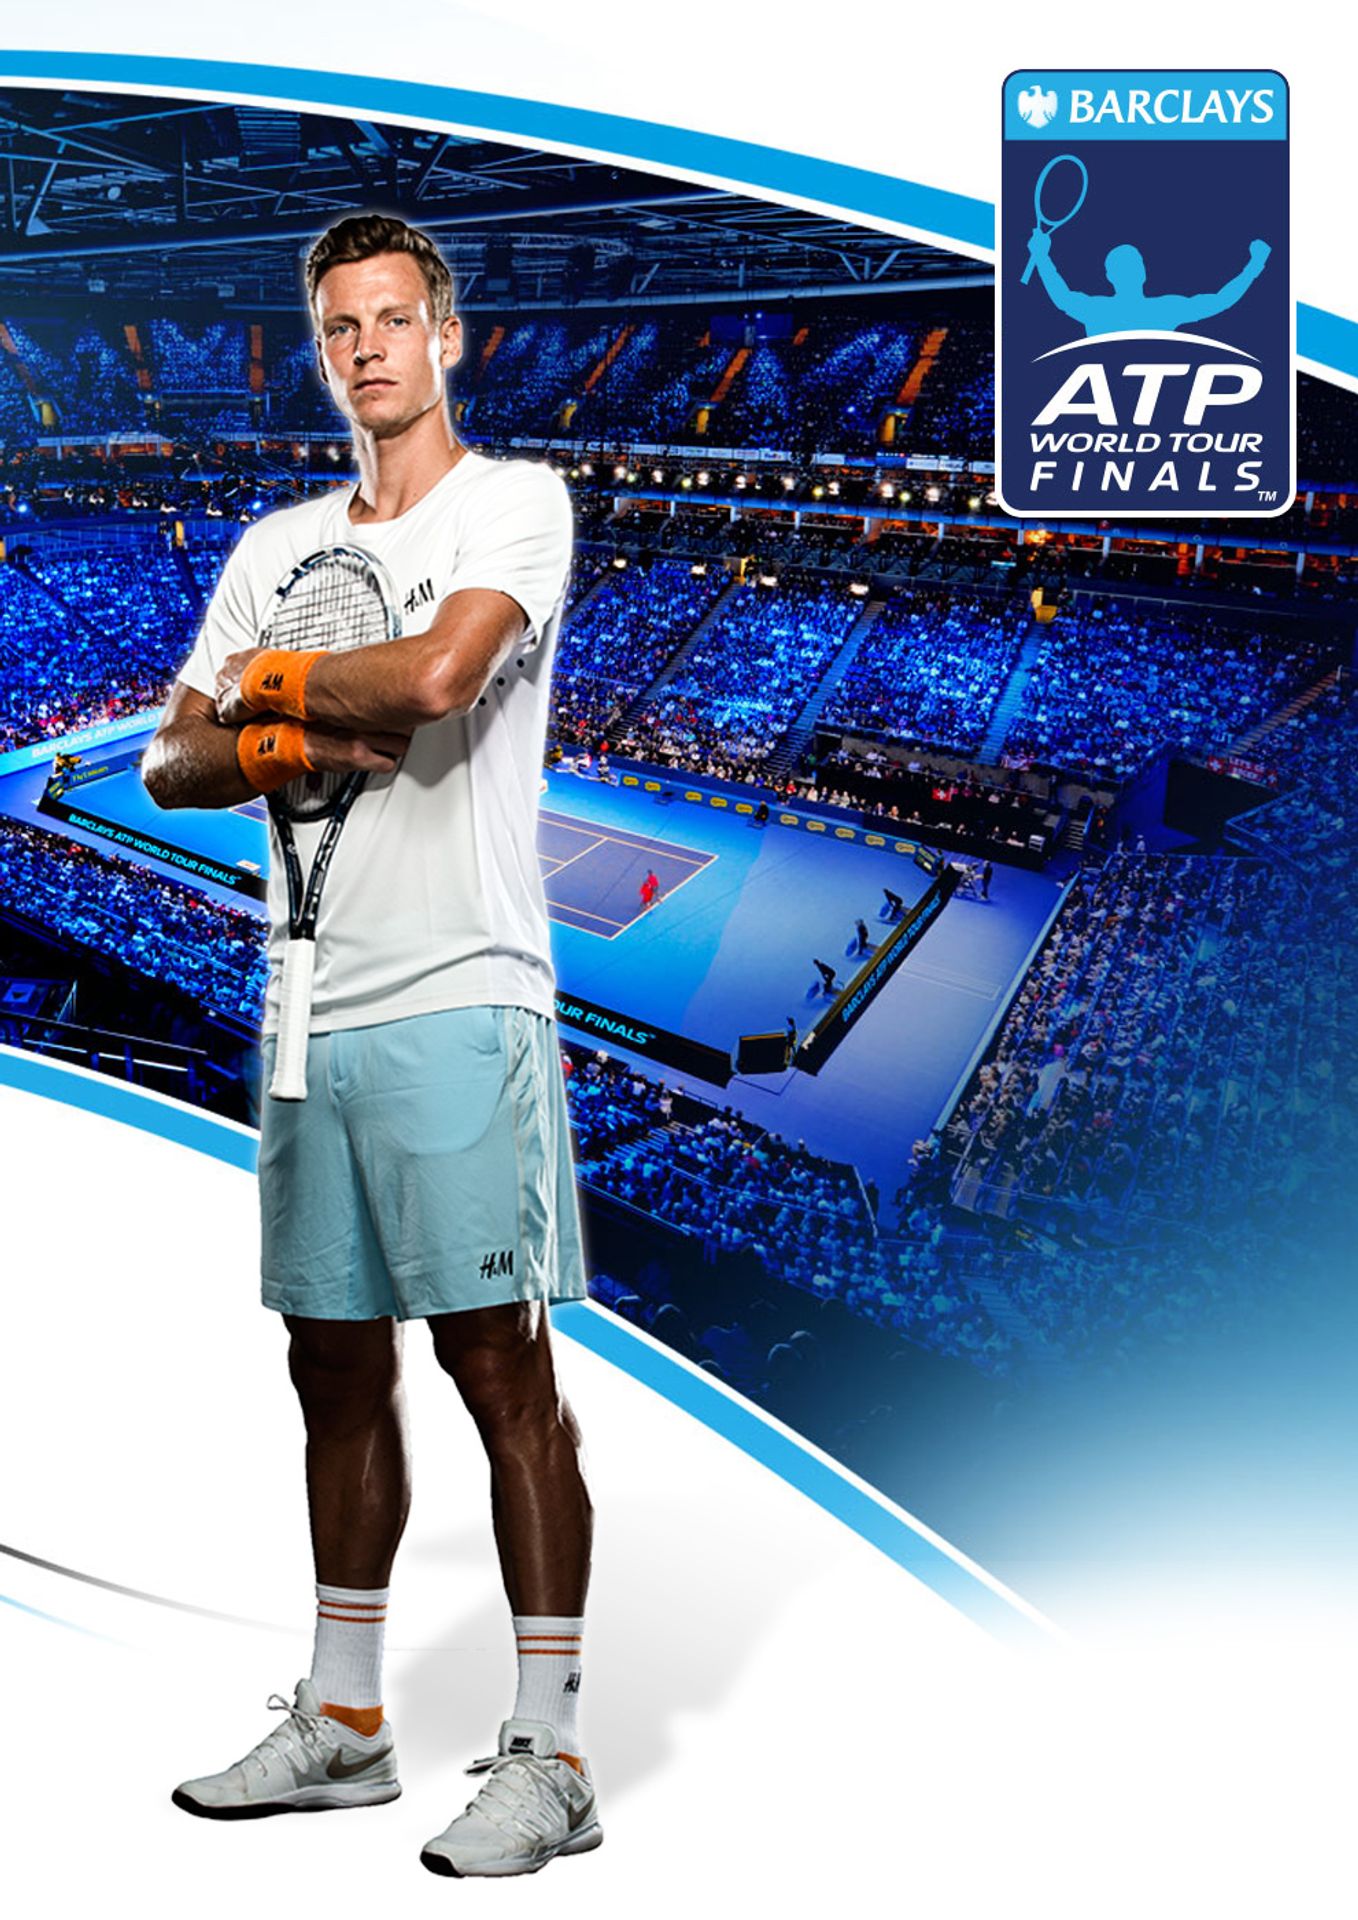 ATP World Tour Finals 2015 - Nejúžasnější fotky z minulosti (21/26)